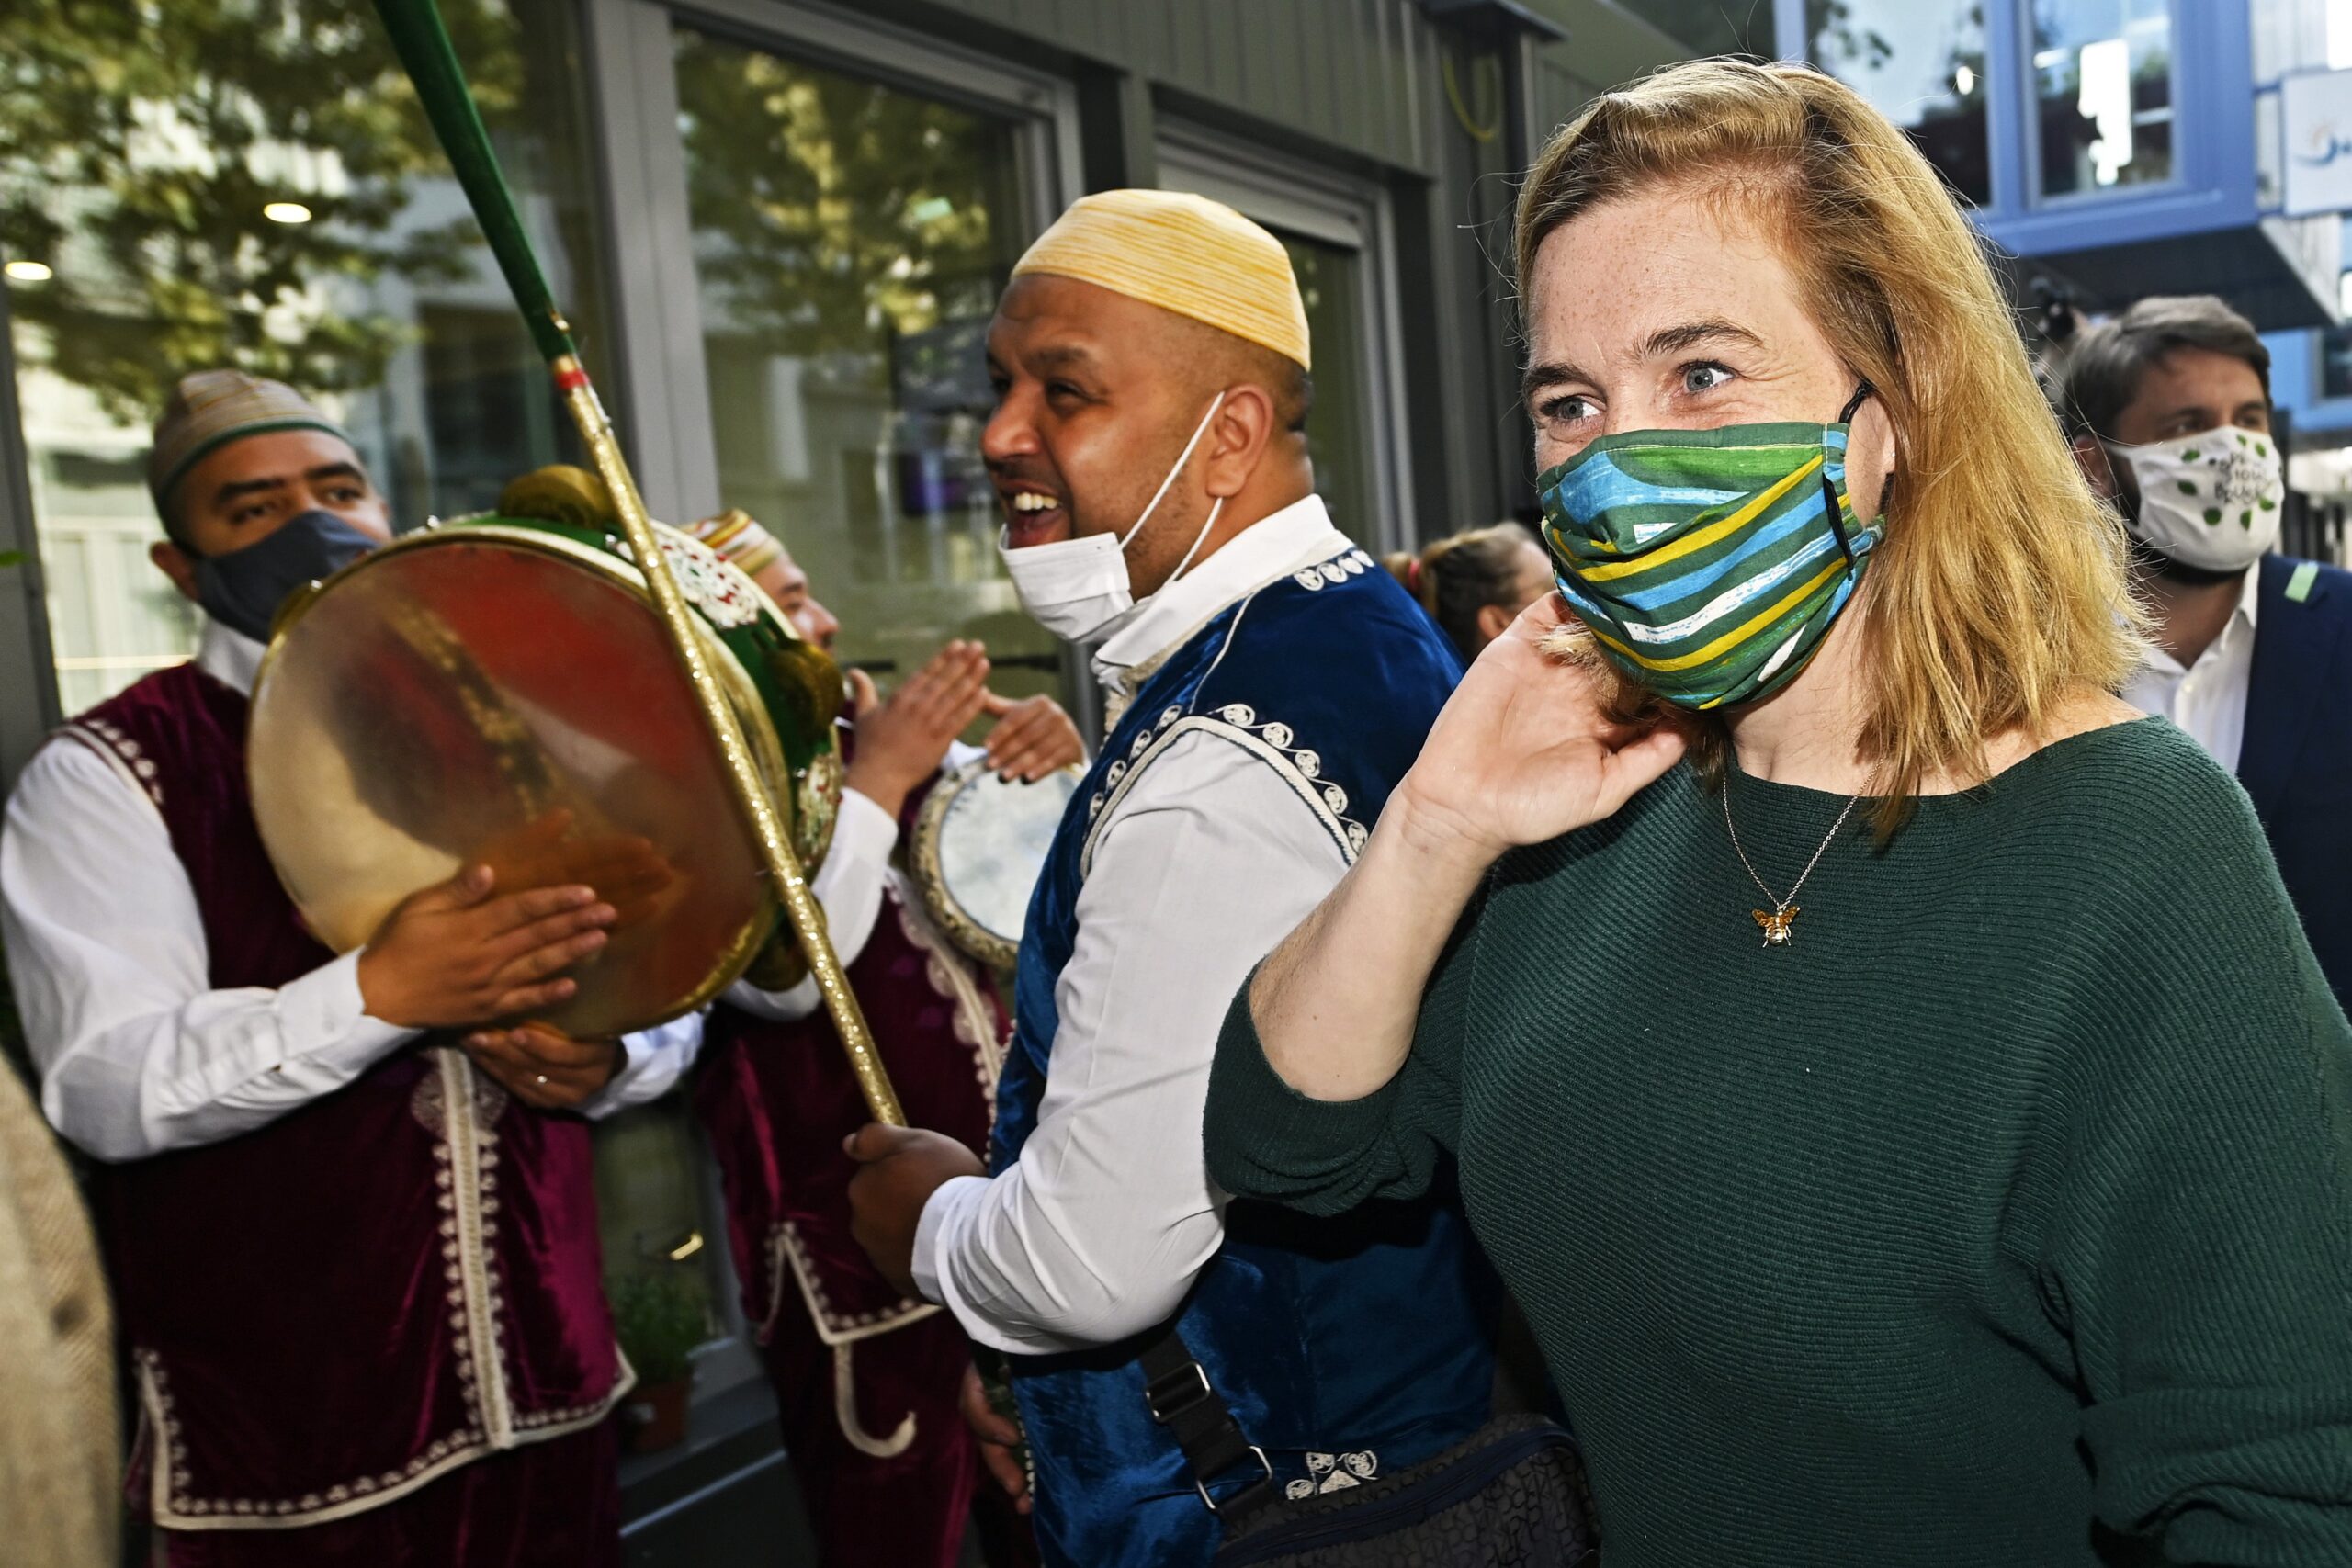 Hoofddoekenvonnis: Van den Brandt (Groen) overweegt religieuze symbolen in MIVB-uniform te intgegreren